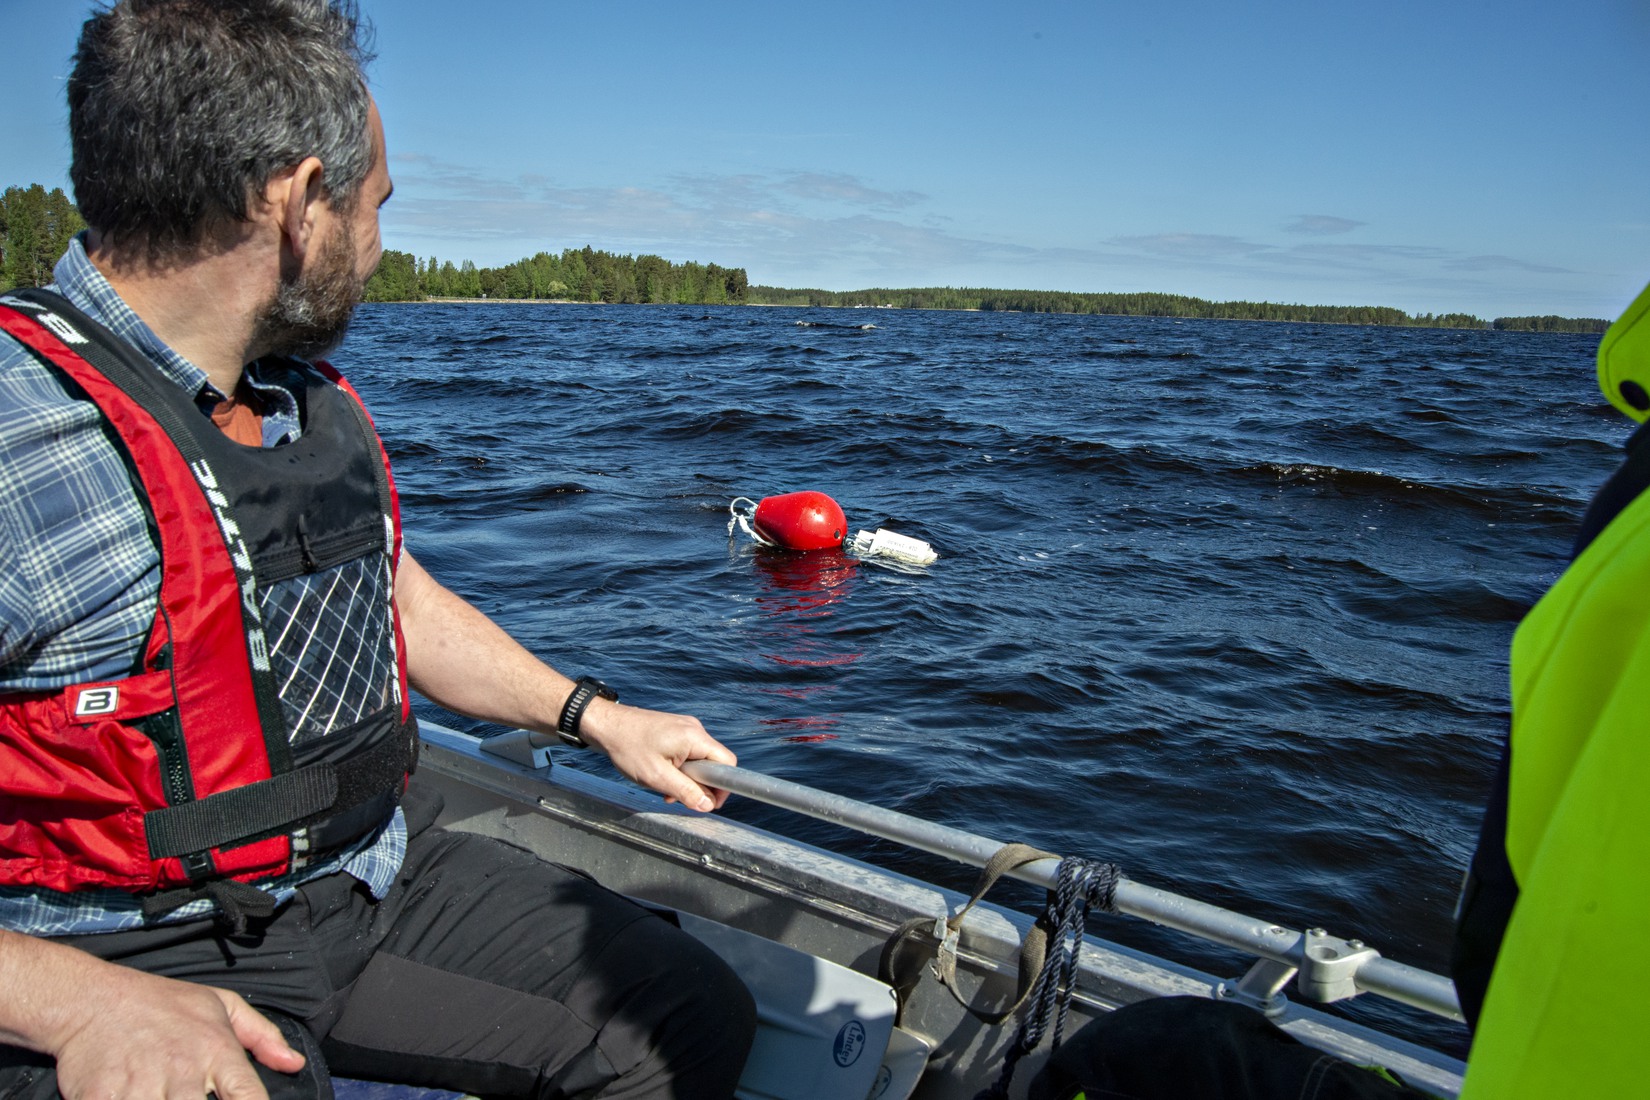 En röd boj syns i sjön. Två personer i båt i förgrunden.